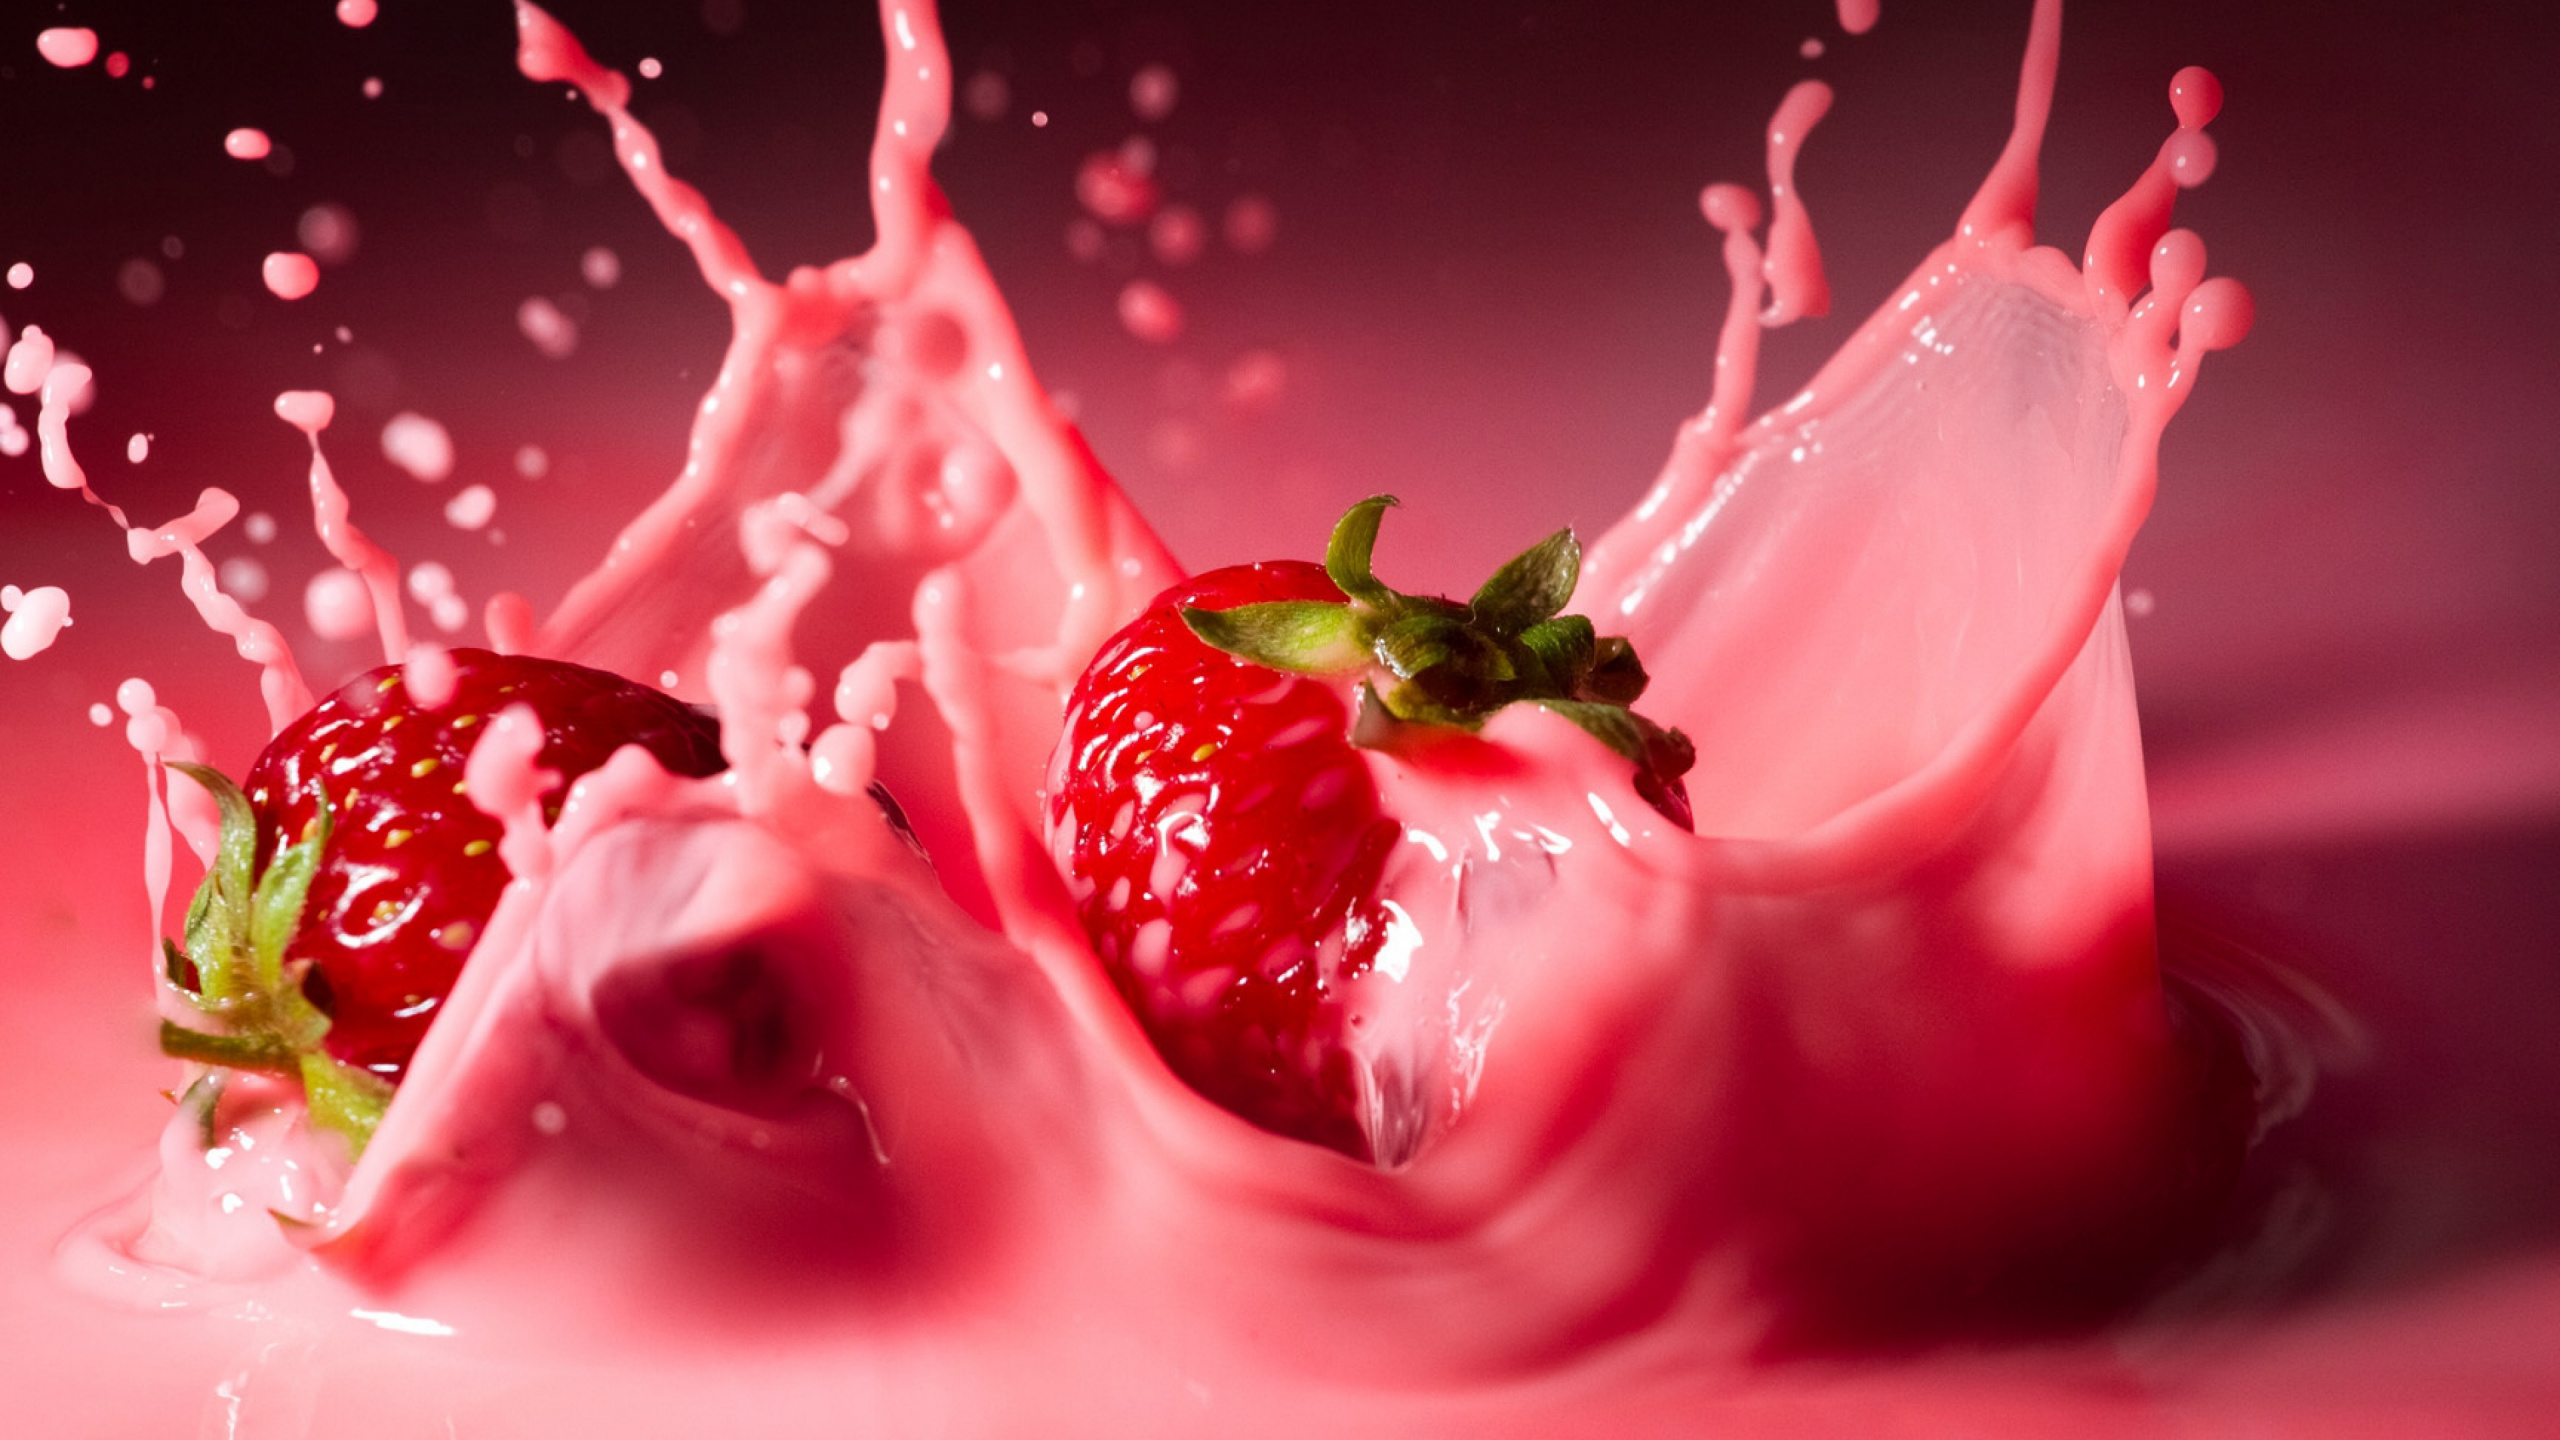 奶昔, 草莓汁, 果汁, 红色的, 草莓 壁纸 2560x1440 允许